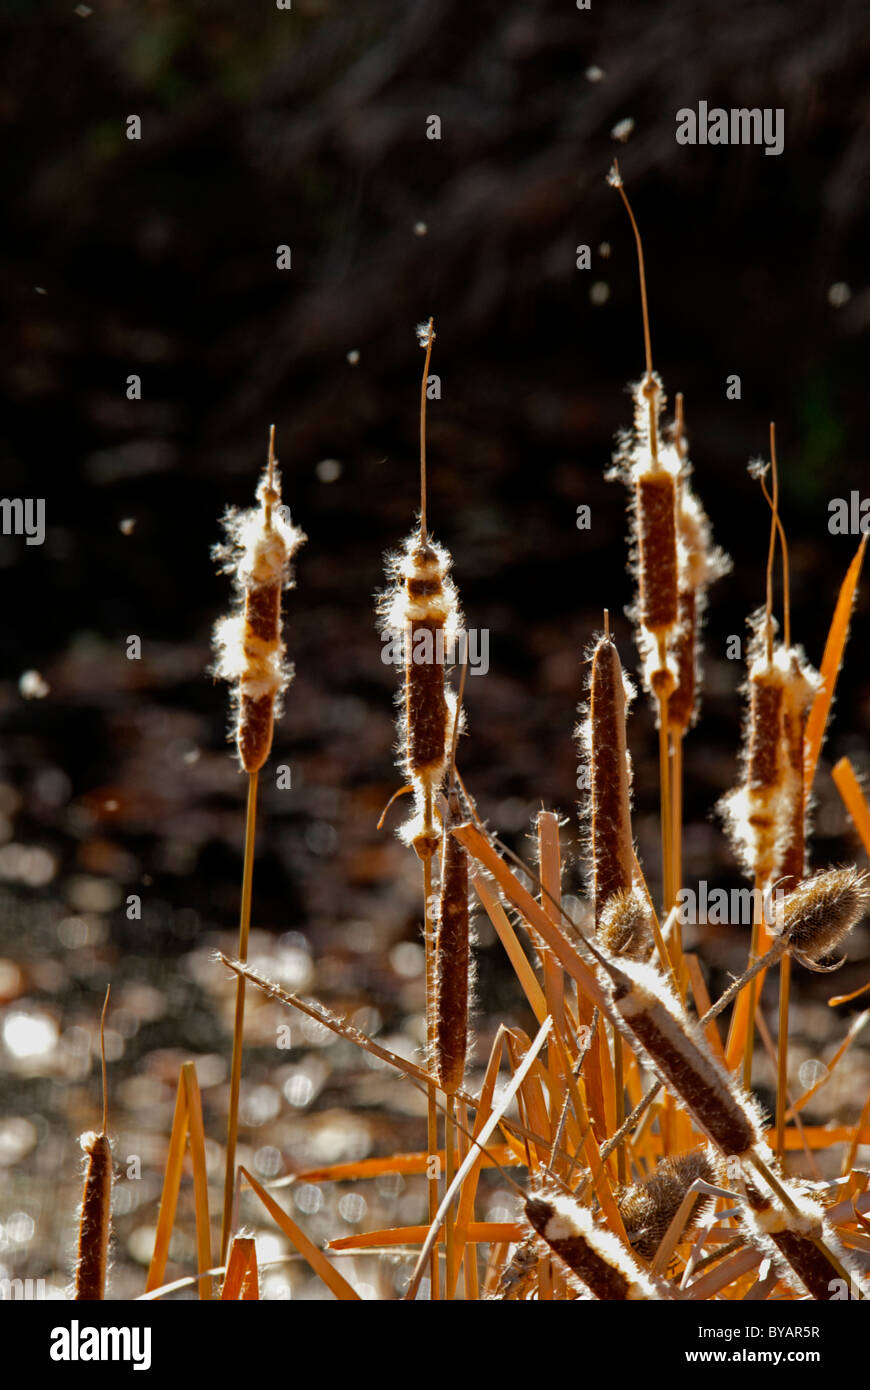 Cattails (Typha latifolia) e (Teasel Dipsacus fullonum) piante in autunno brezza del mattino. Immagine che mostra la dispersione di semi nel vento. Foto Stock